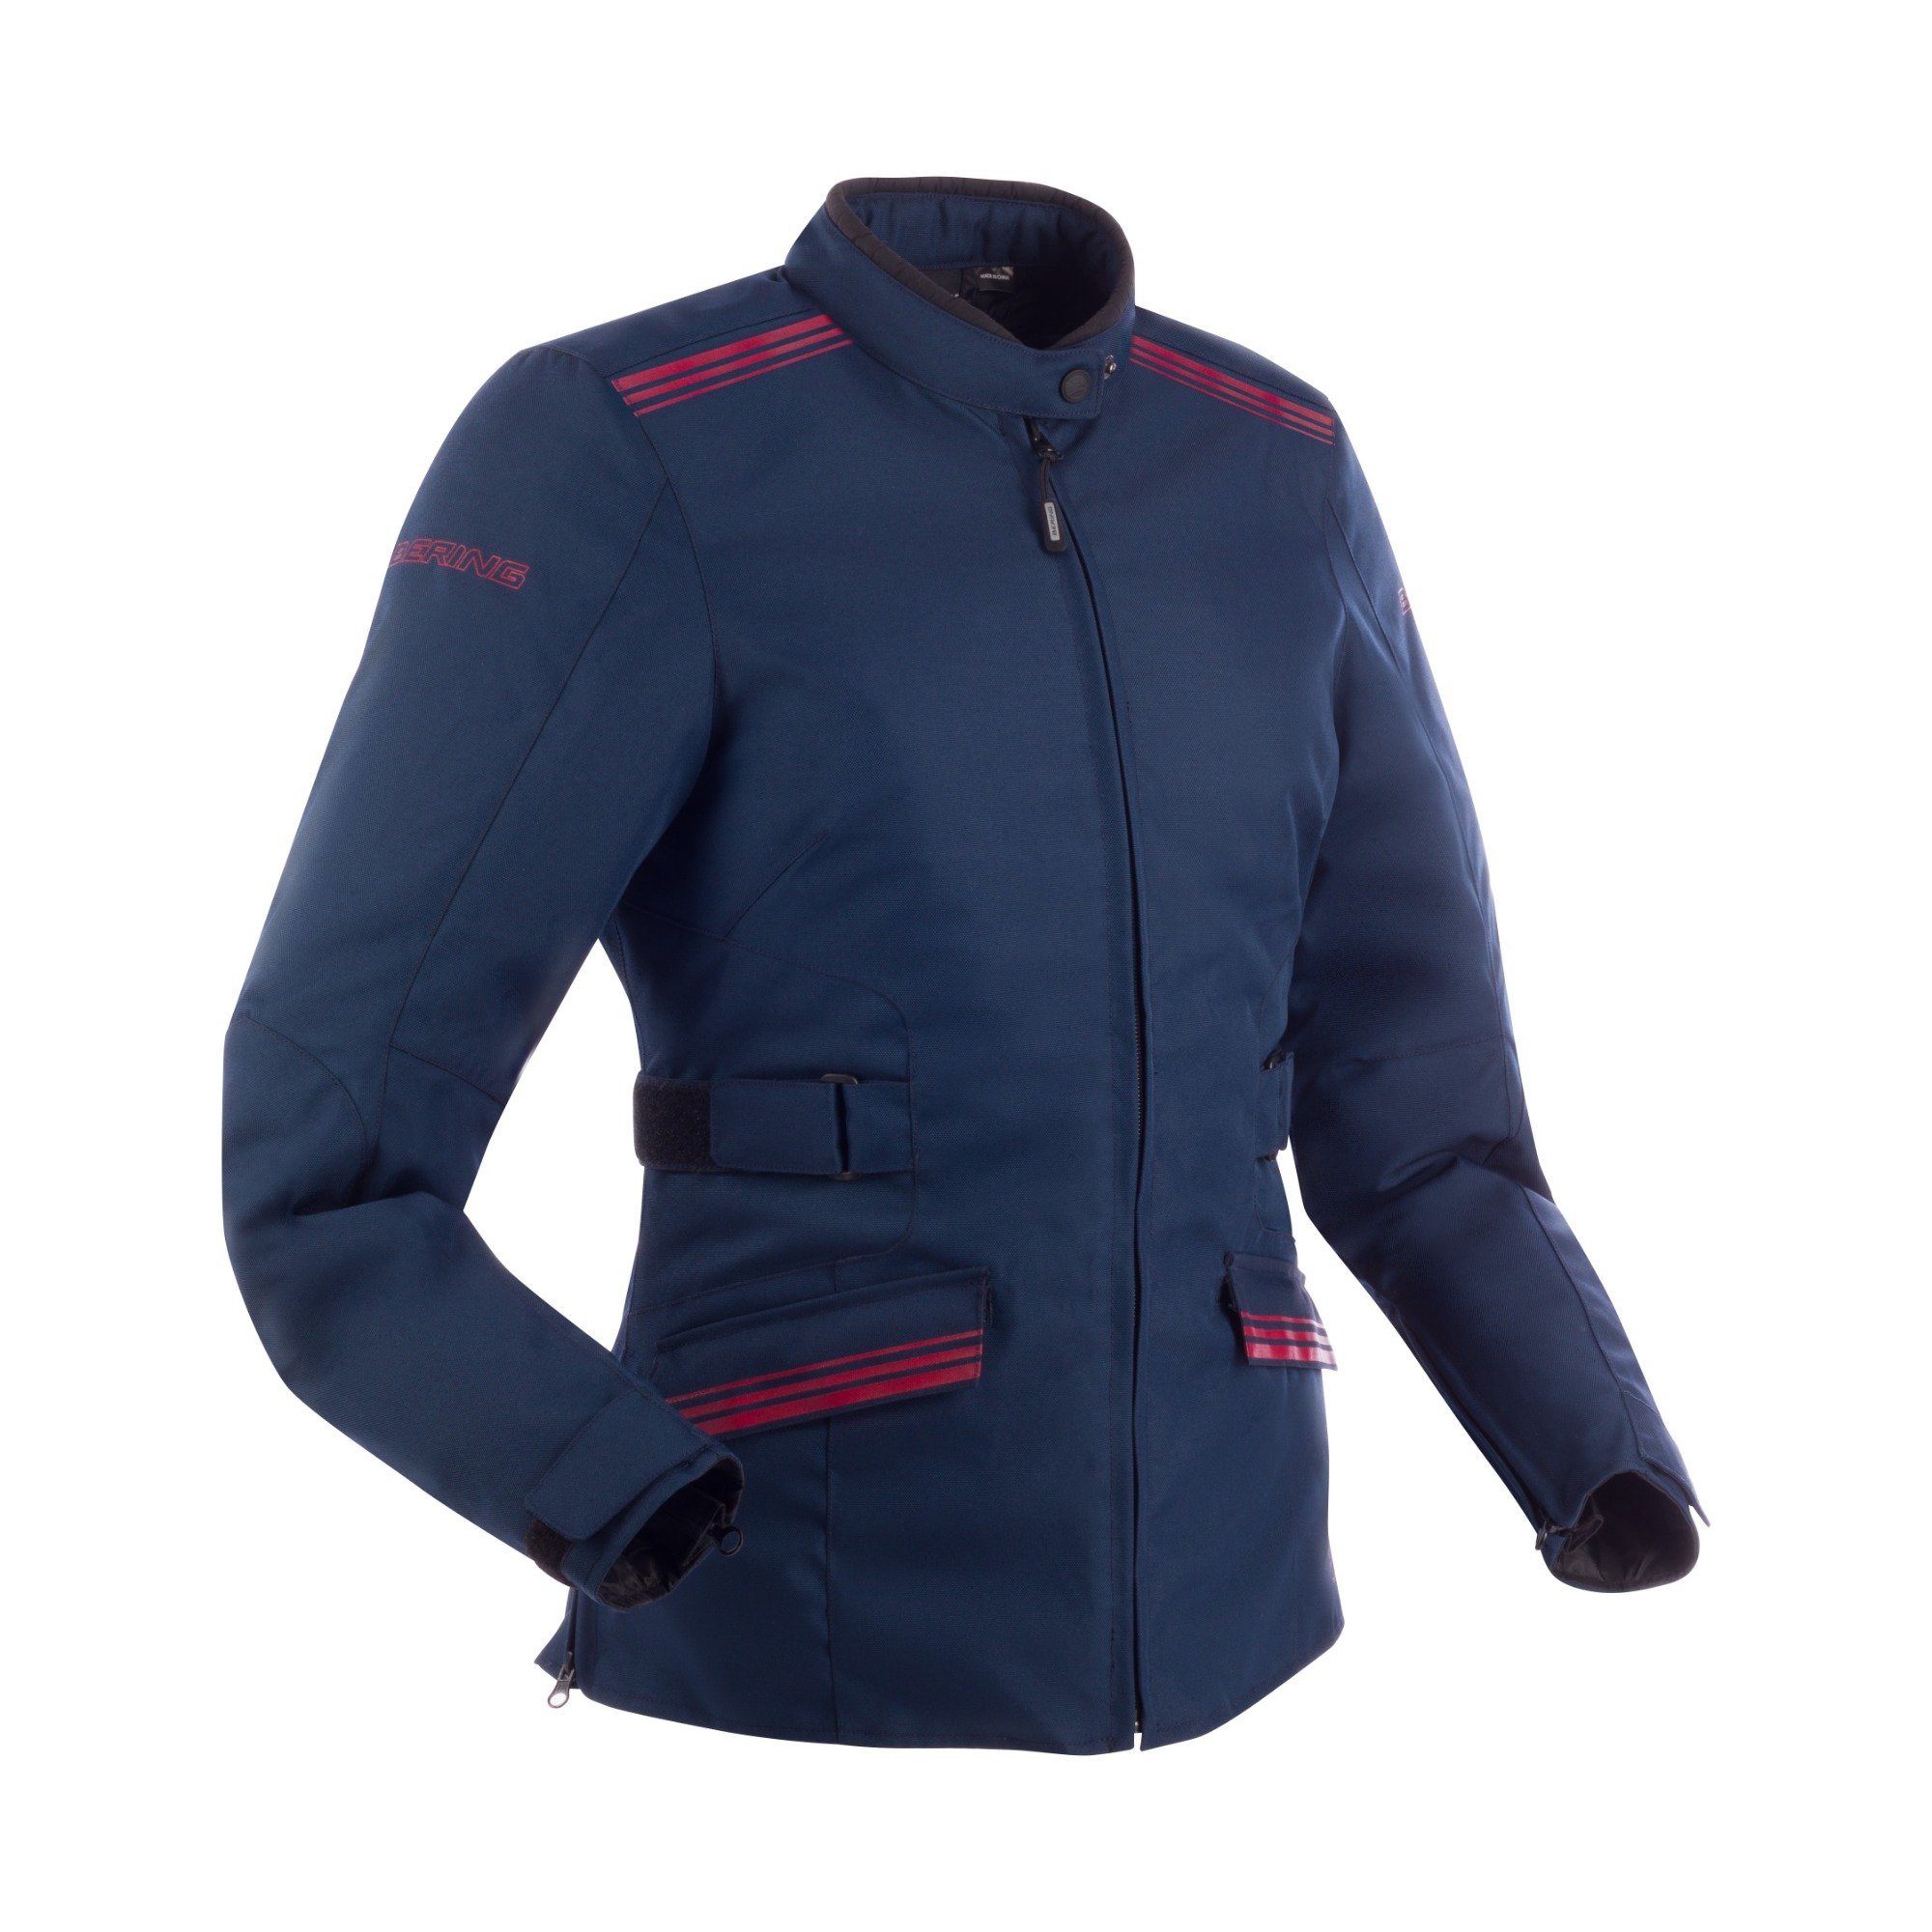 Image of Bering Shine Jacket Lady Navy Blue Burgundy Size T1 ID 3660815169957